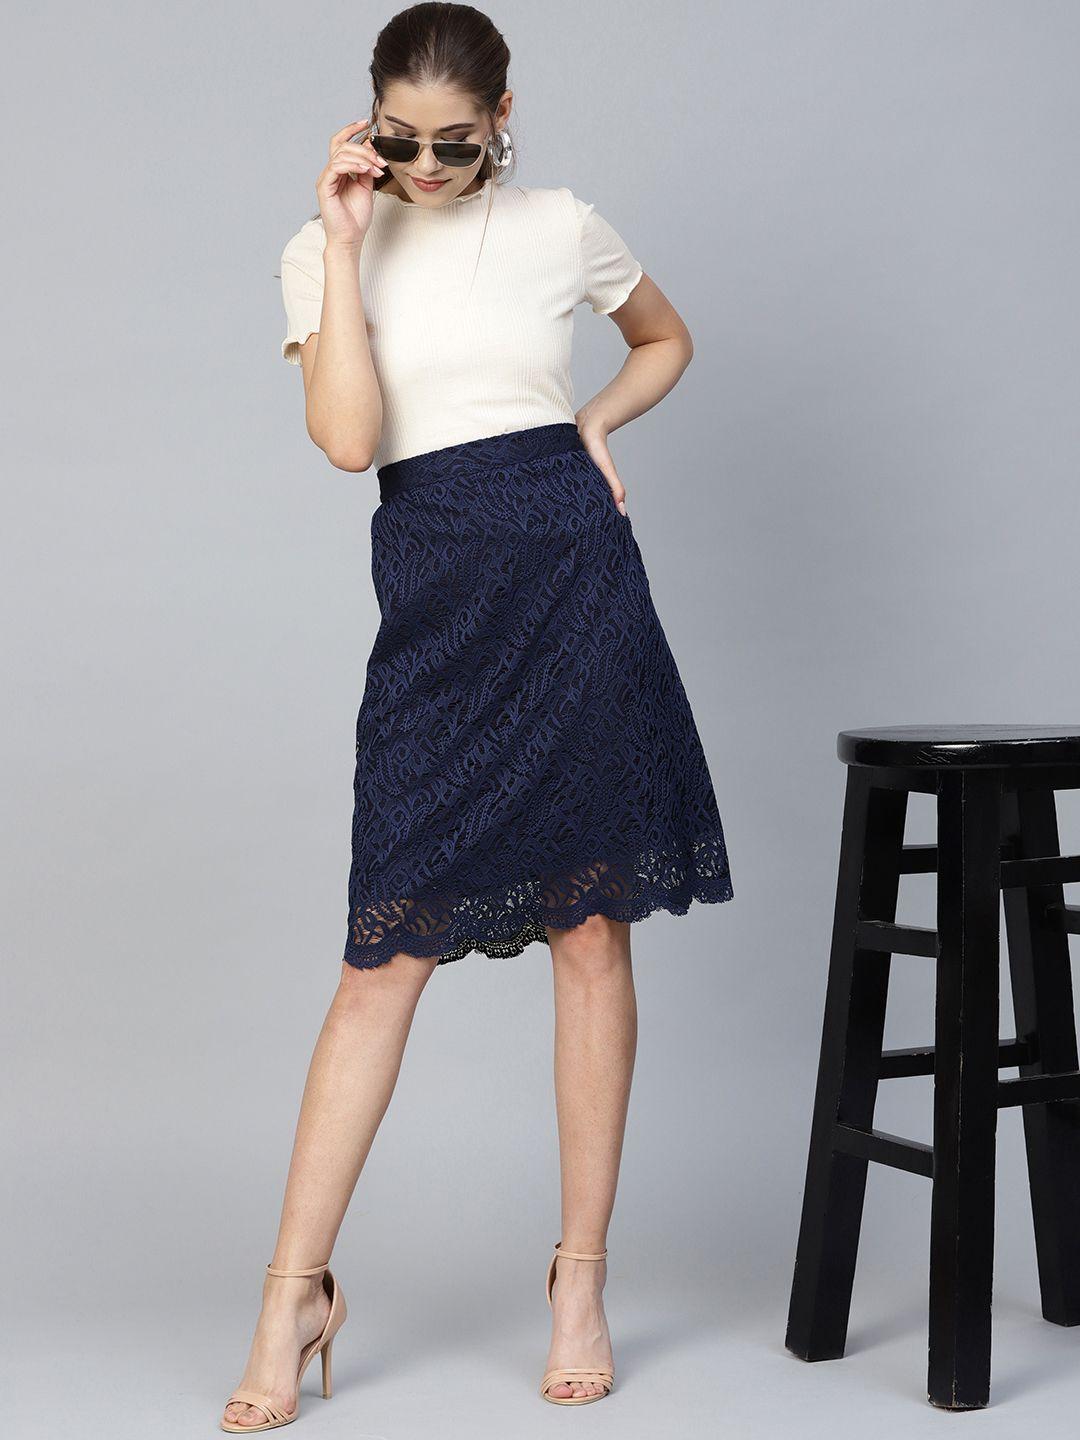 athena navy blue lace a-line skirt